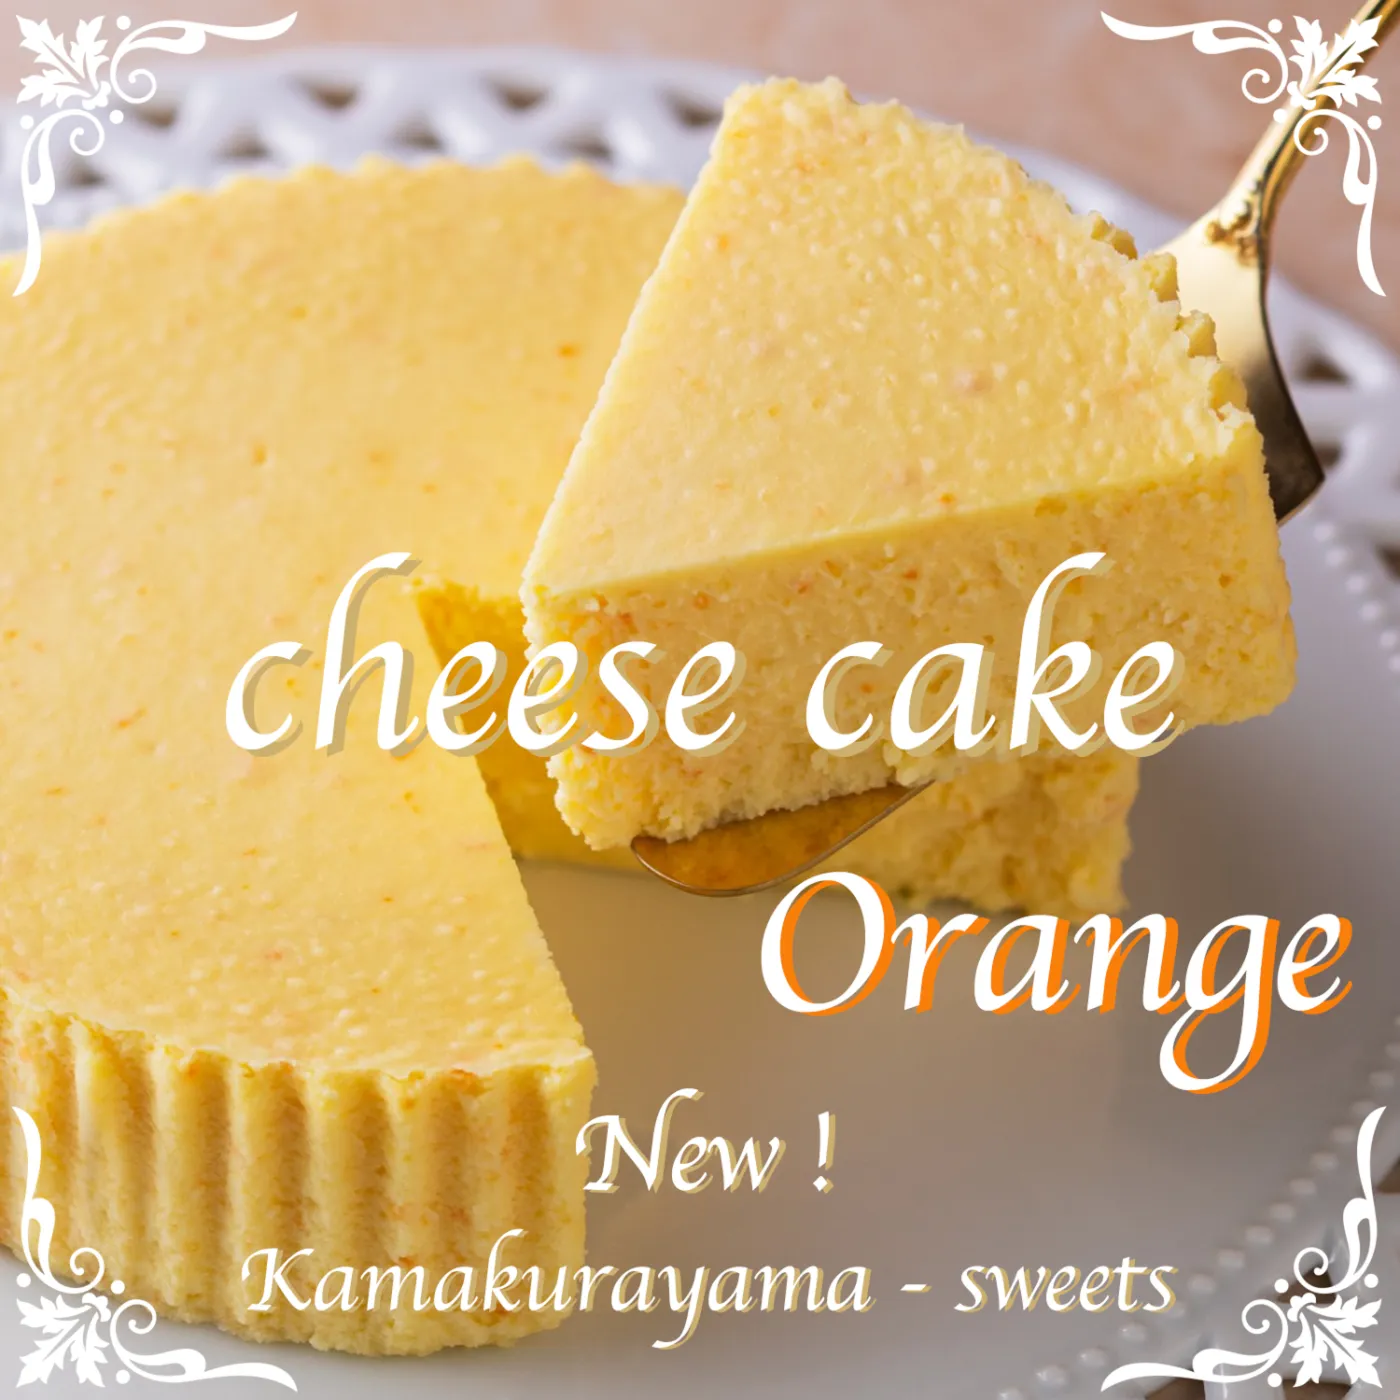 チーズケーキ オレンジ新発売 バナー画像